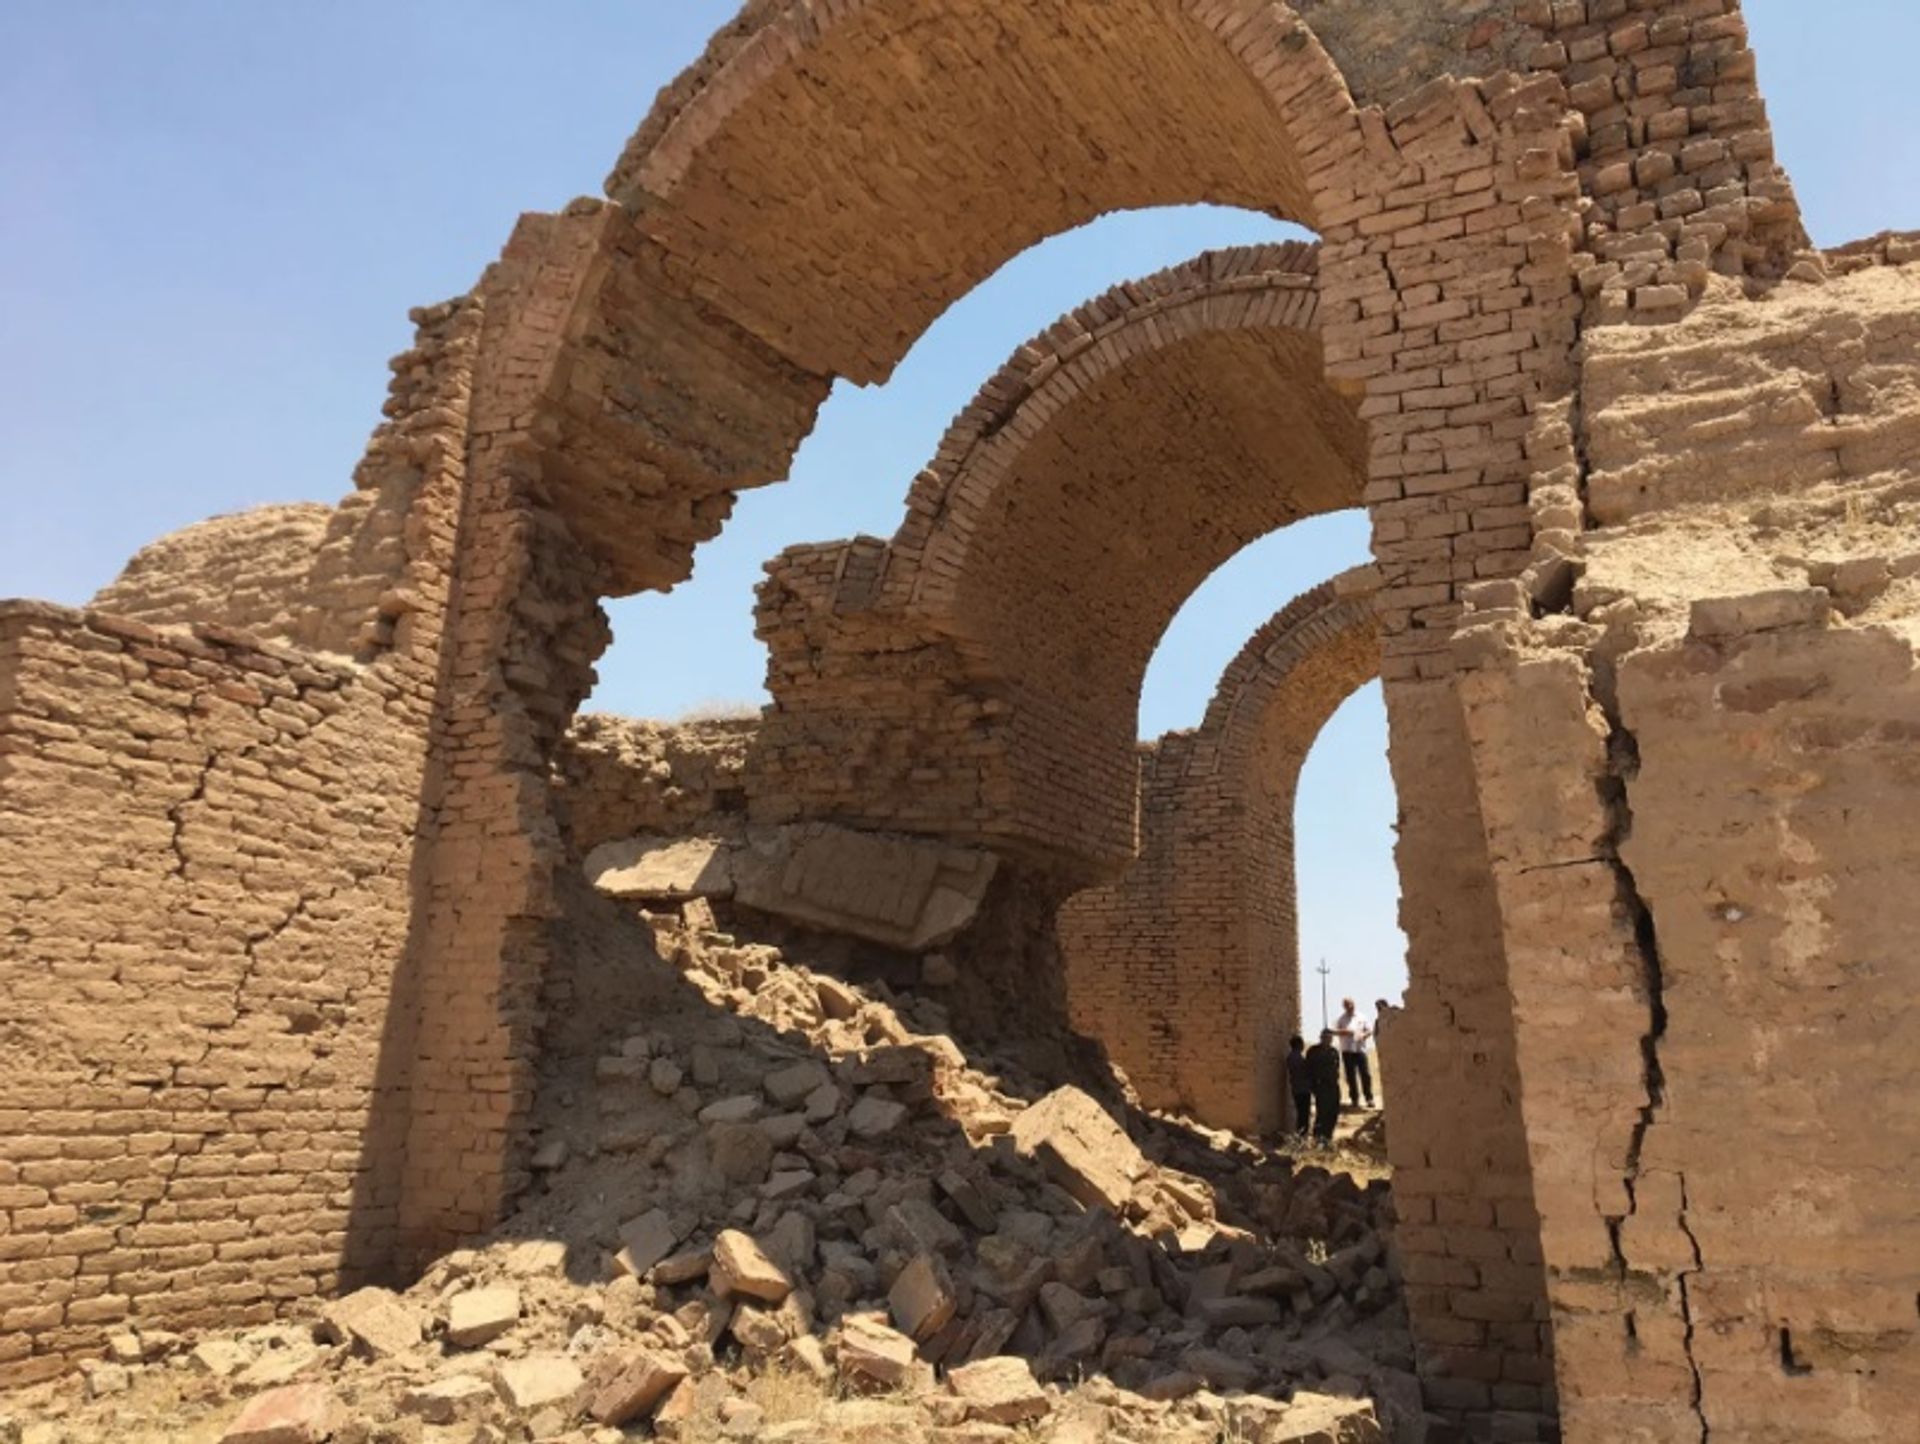 70% משער טבירה, הניצב במרכז אשור, ניזוקו כאשר דאע"ש תקפה את העיר ב-2015

מרכז AUIS לארכיאולוגיה ומורשת תרבותית